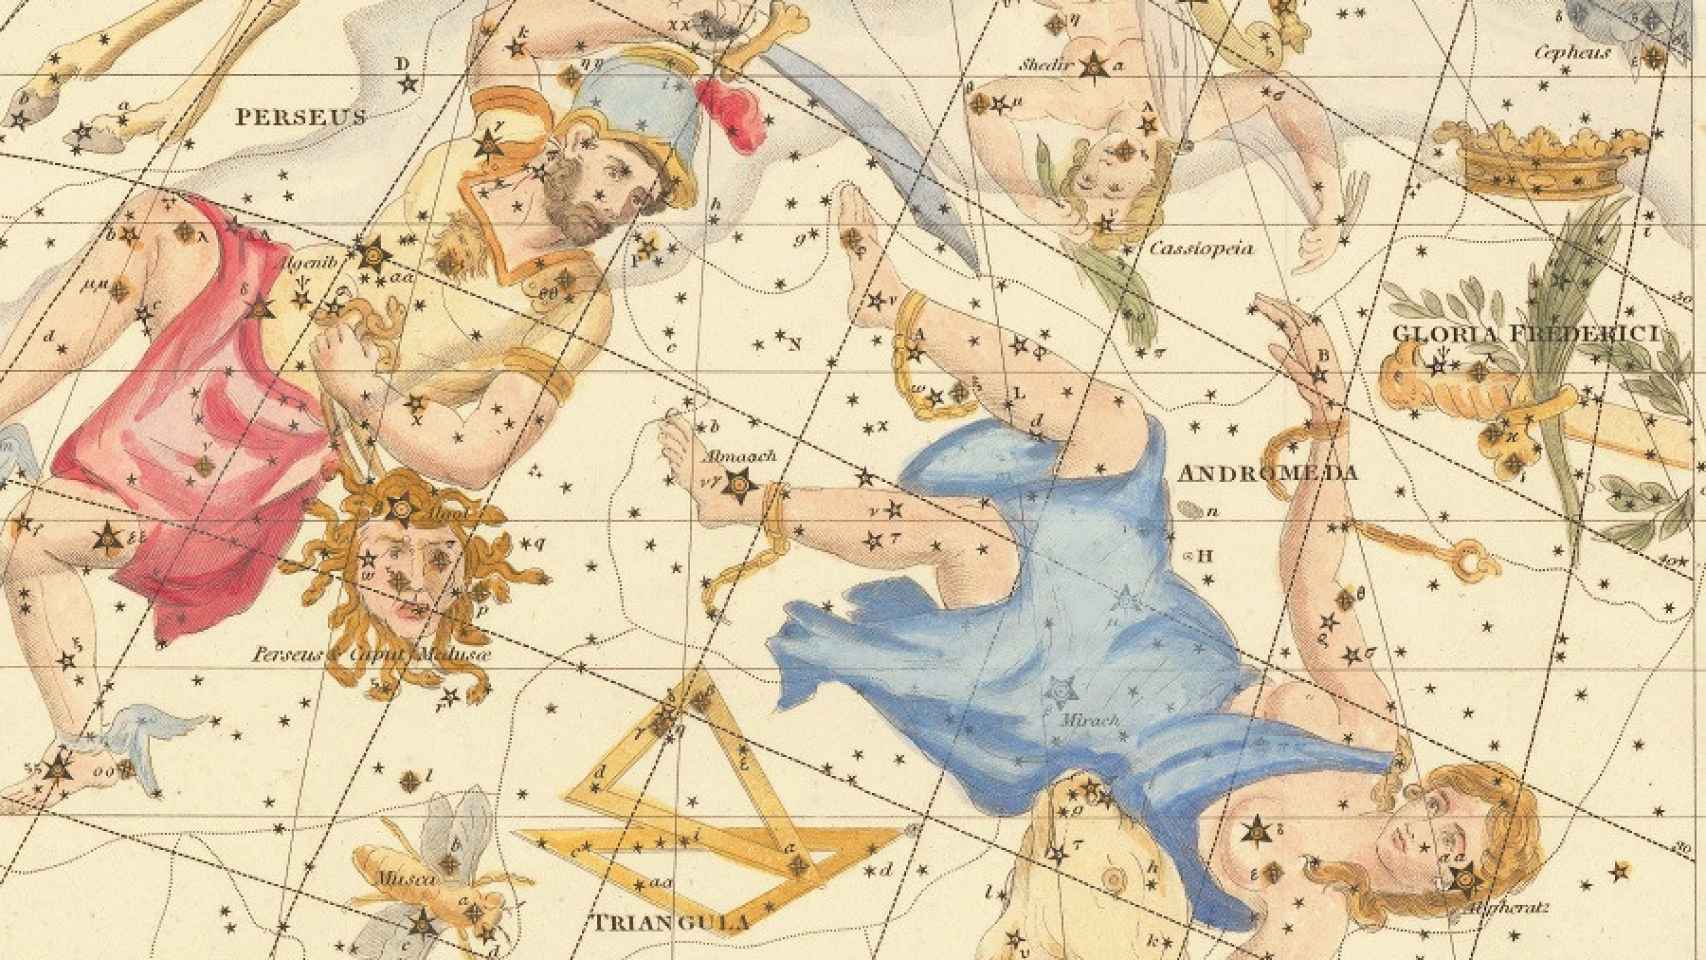 Atlas celestial de Alexander Jamieson. Publicado en Londres en 1822.